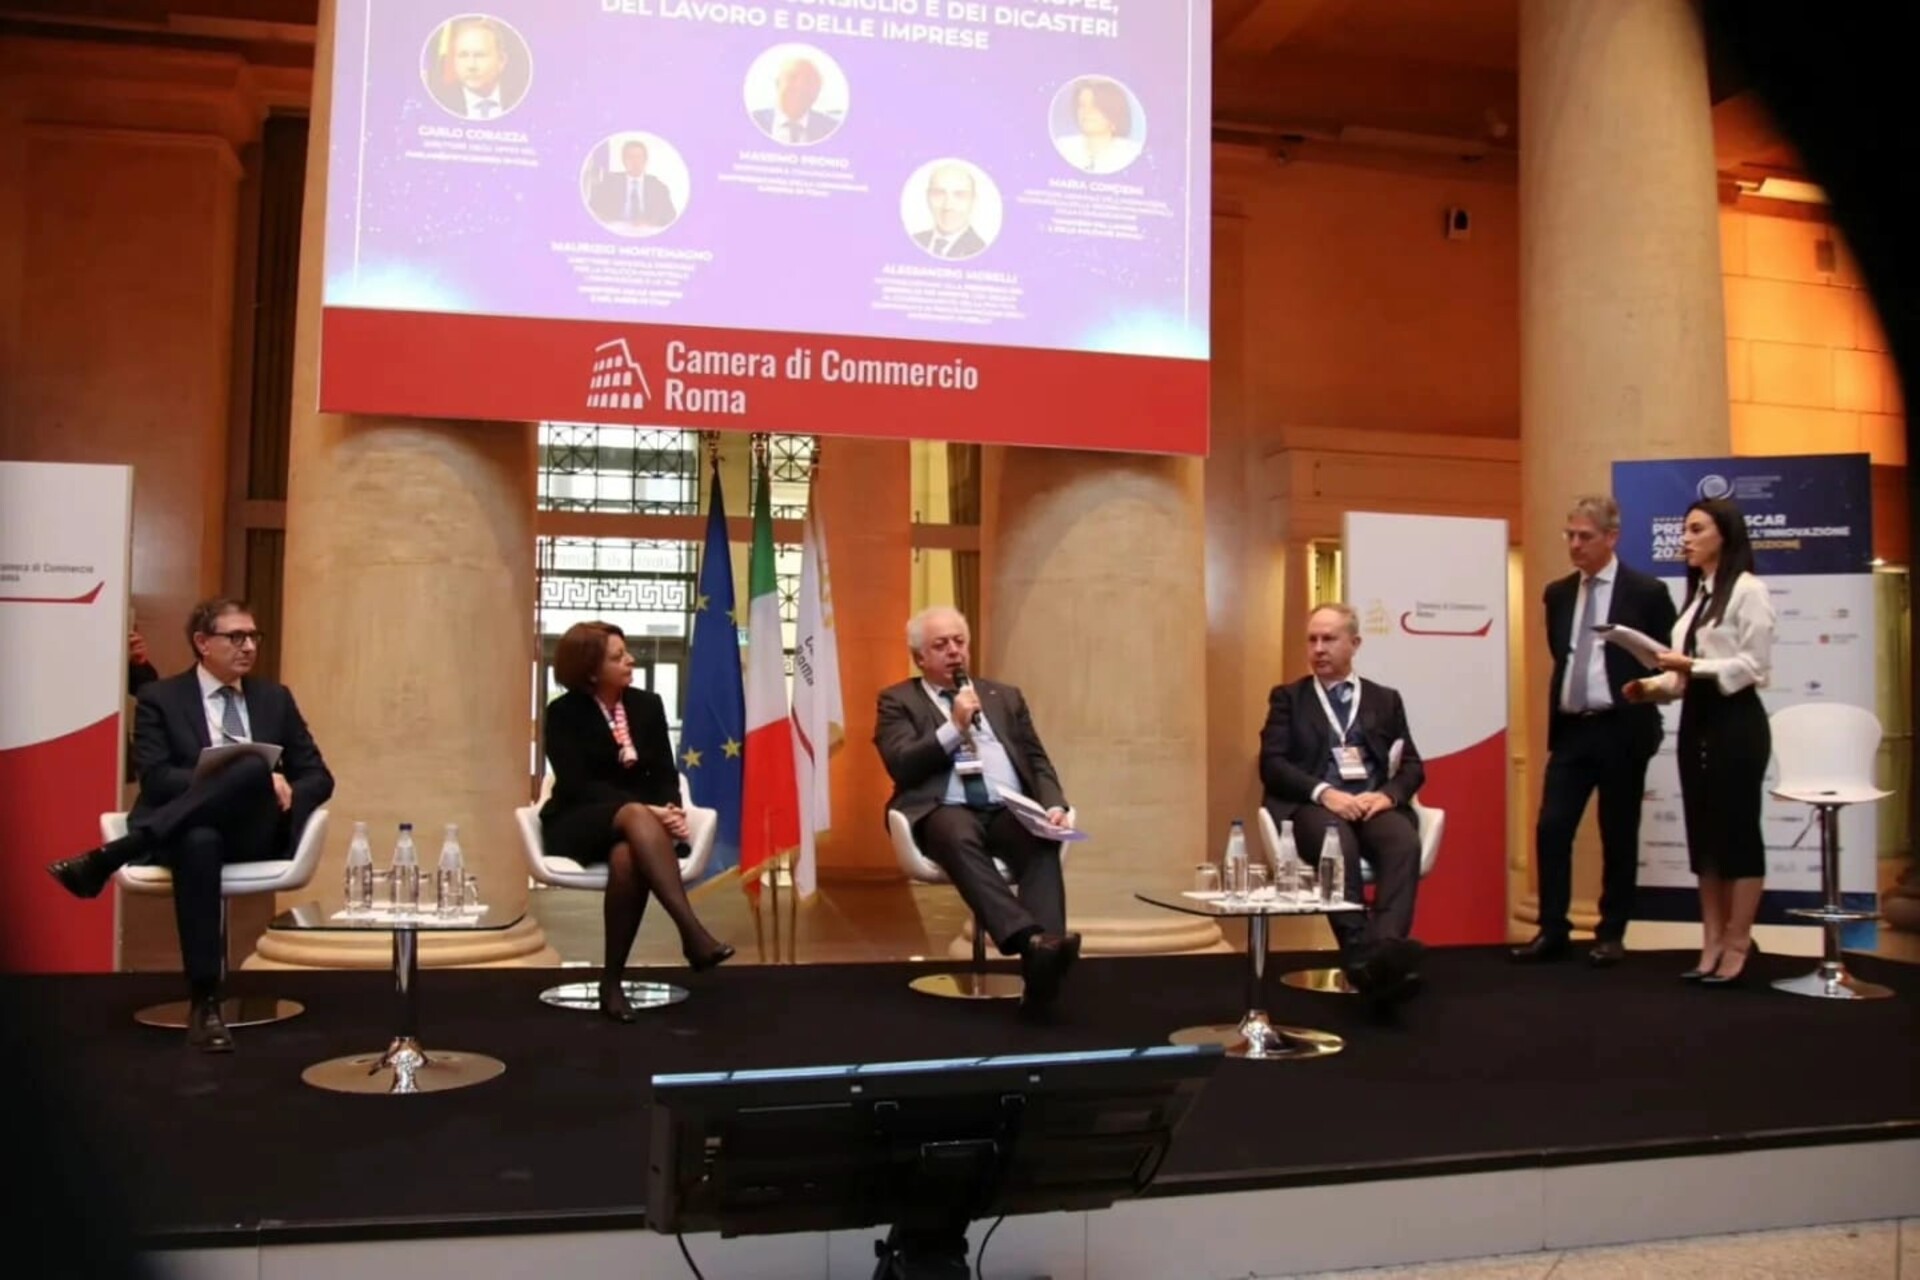 イノベーション・オスカー: 科学委員会が作成した「イタリアの若者とイノベーションの現状に関する第XNUMX回報告書」